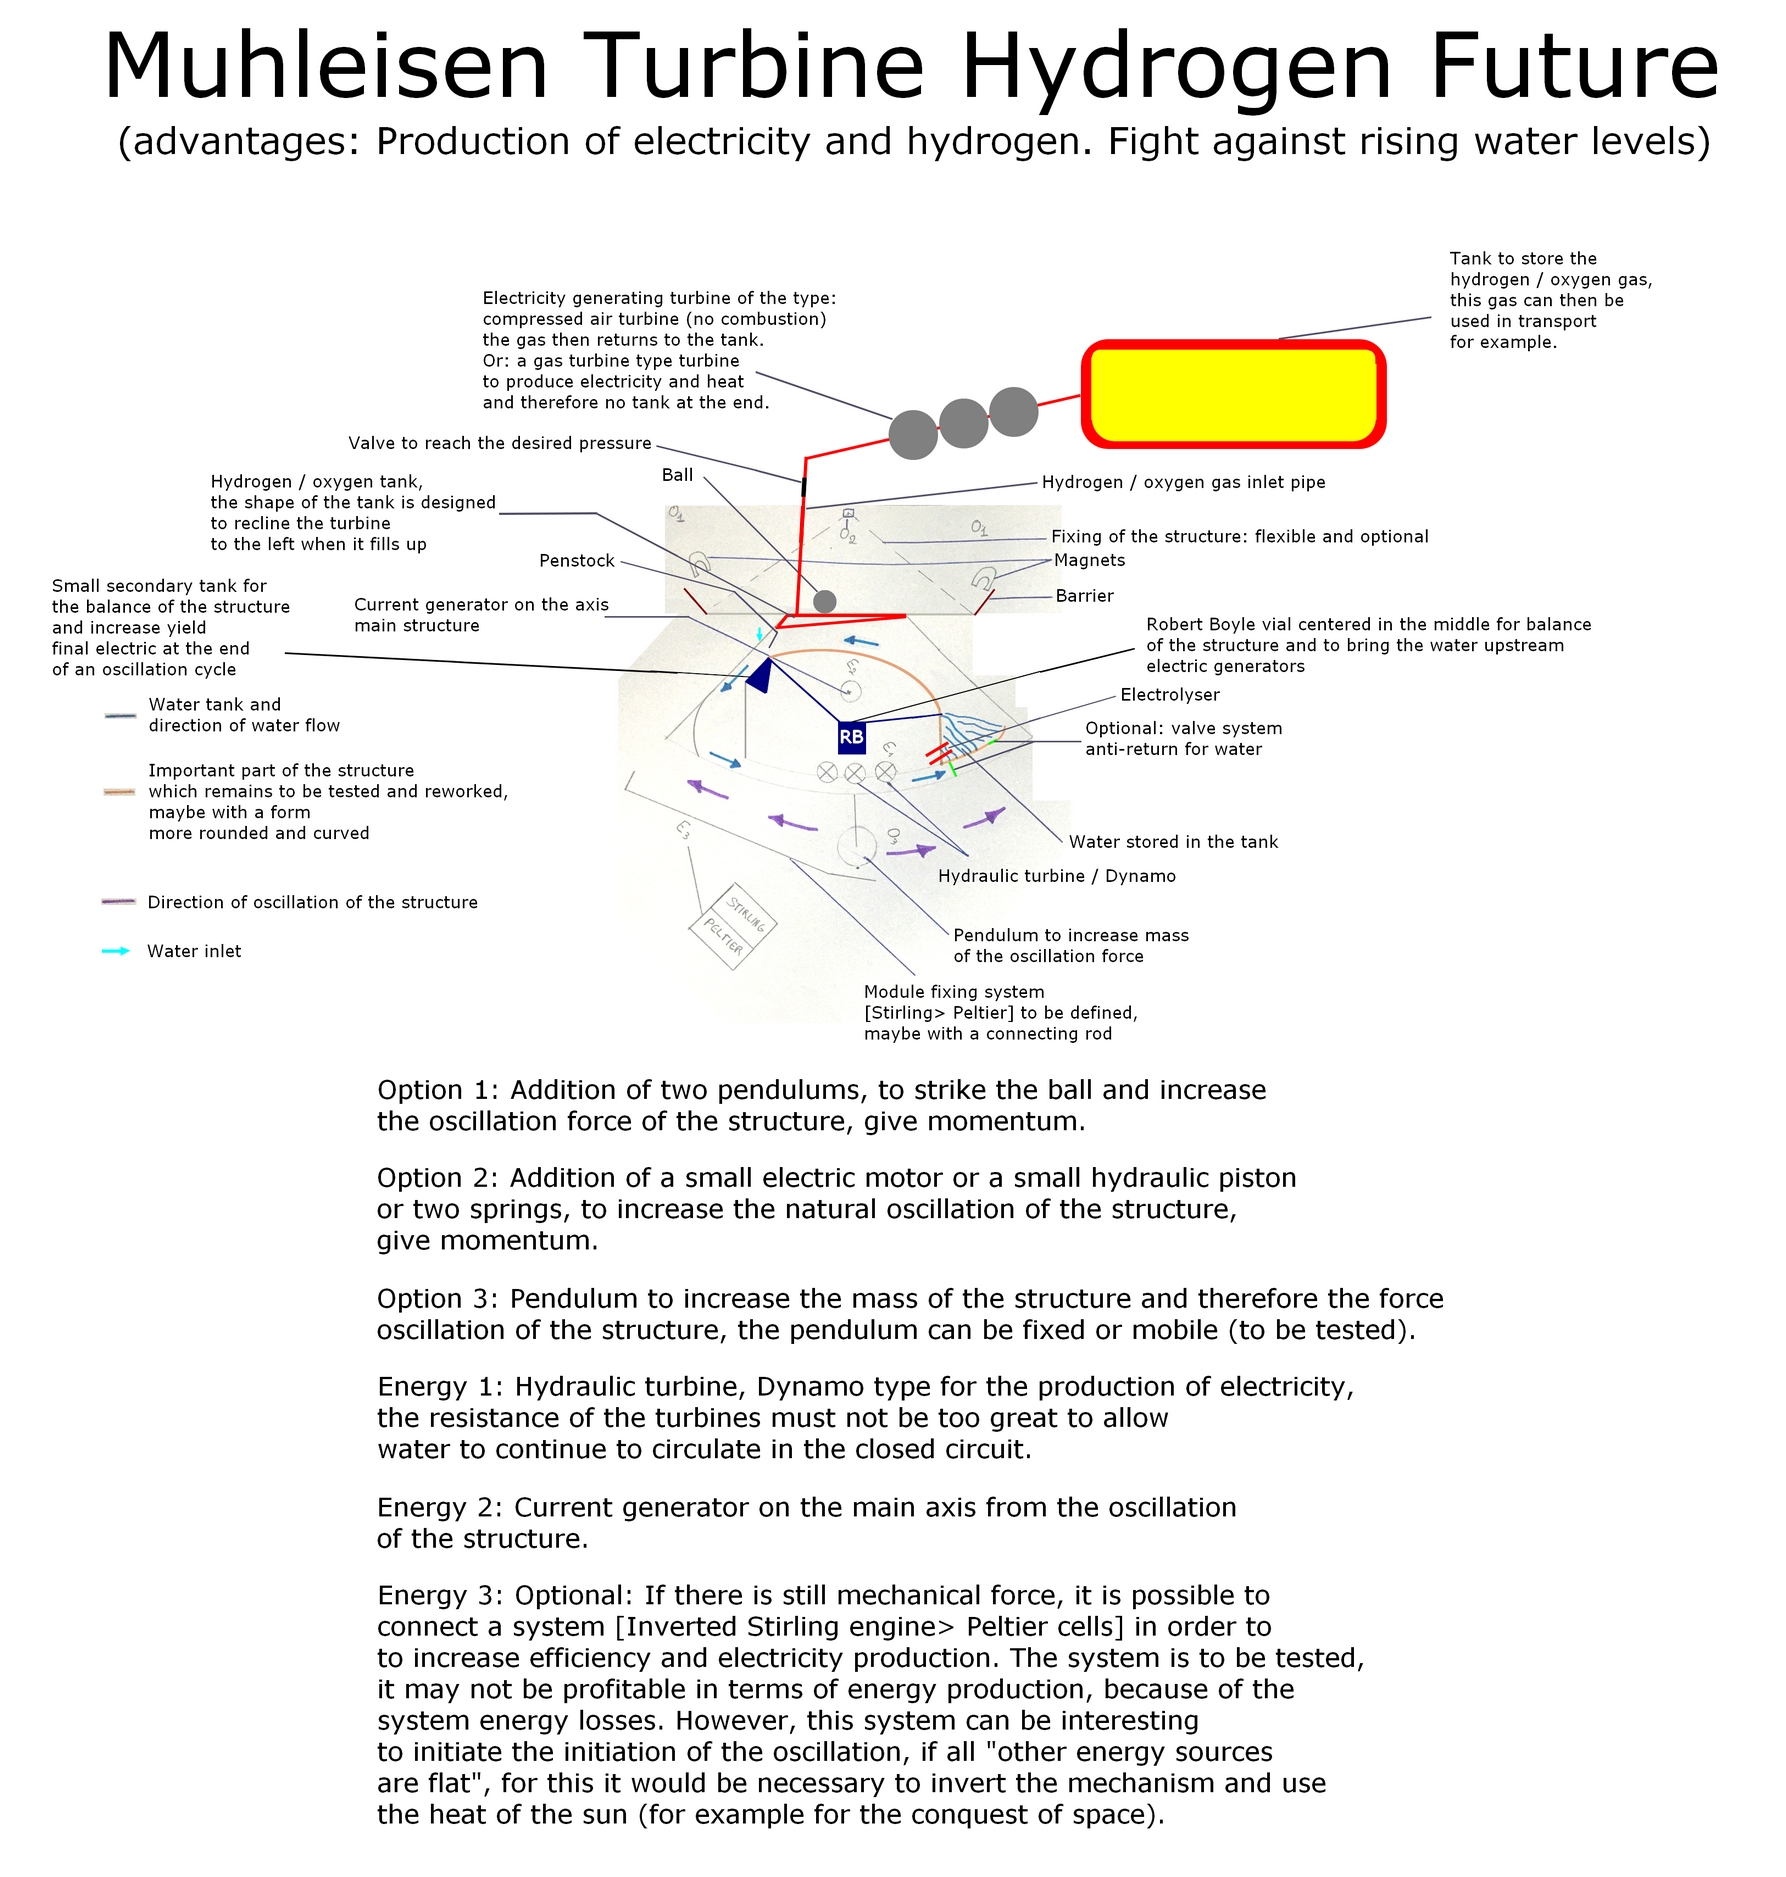 The Muhleisen Turbine version hydrogen future